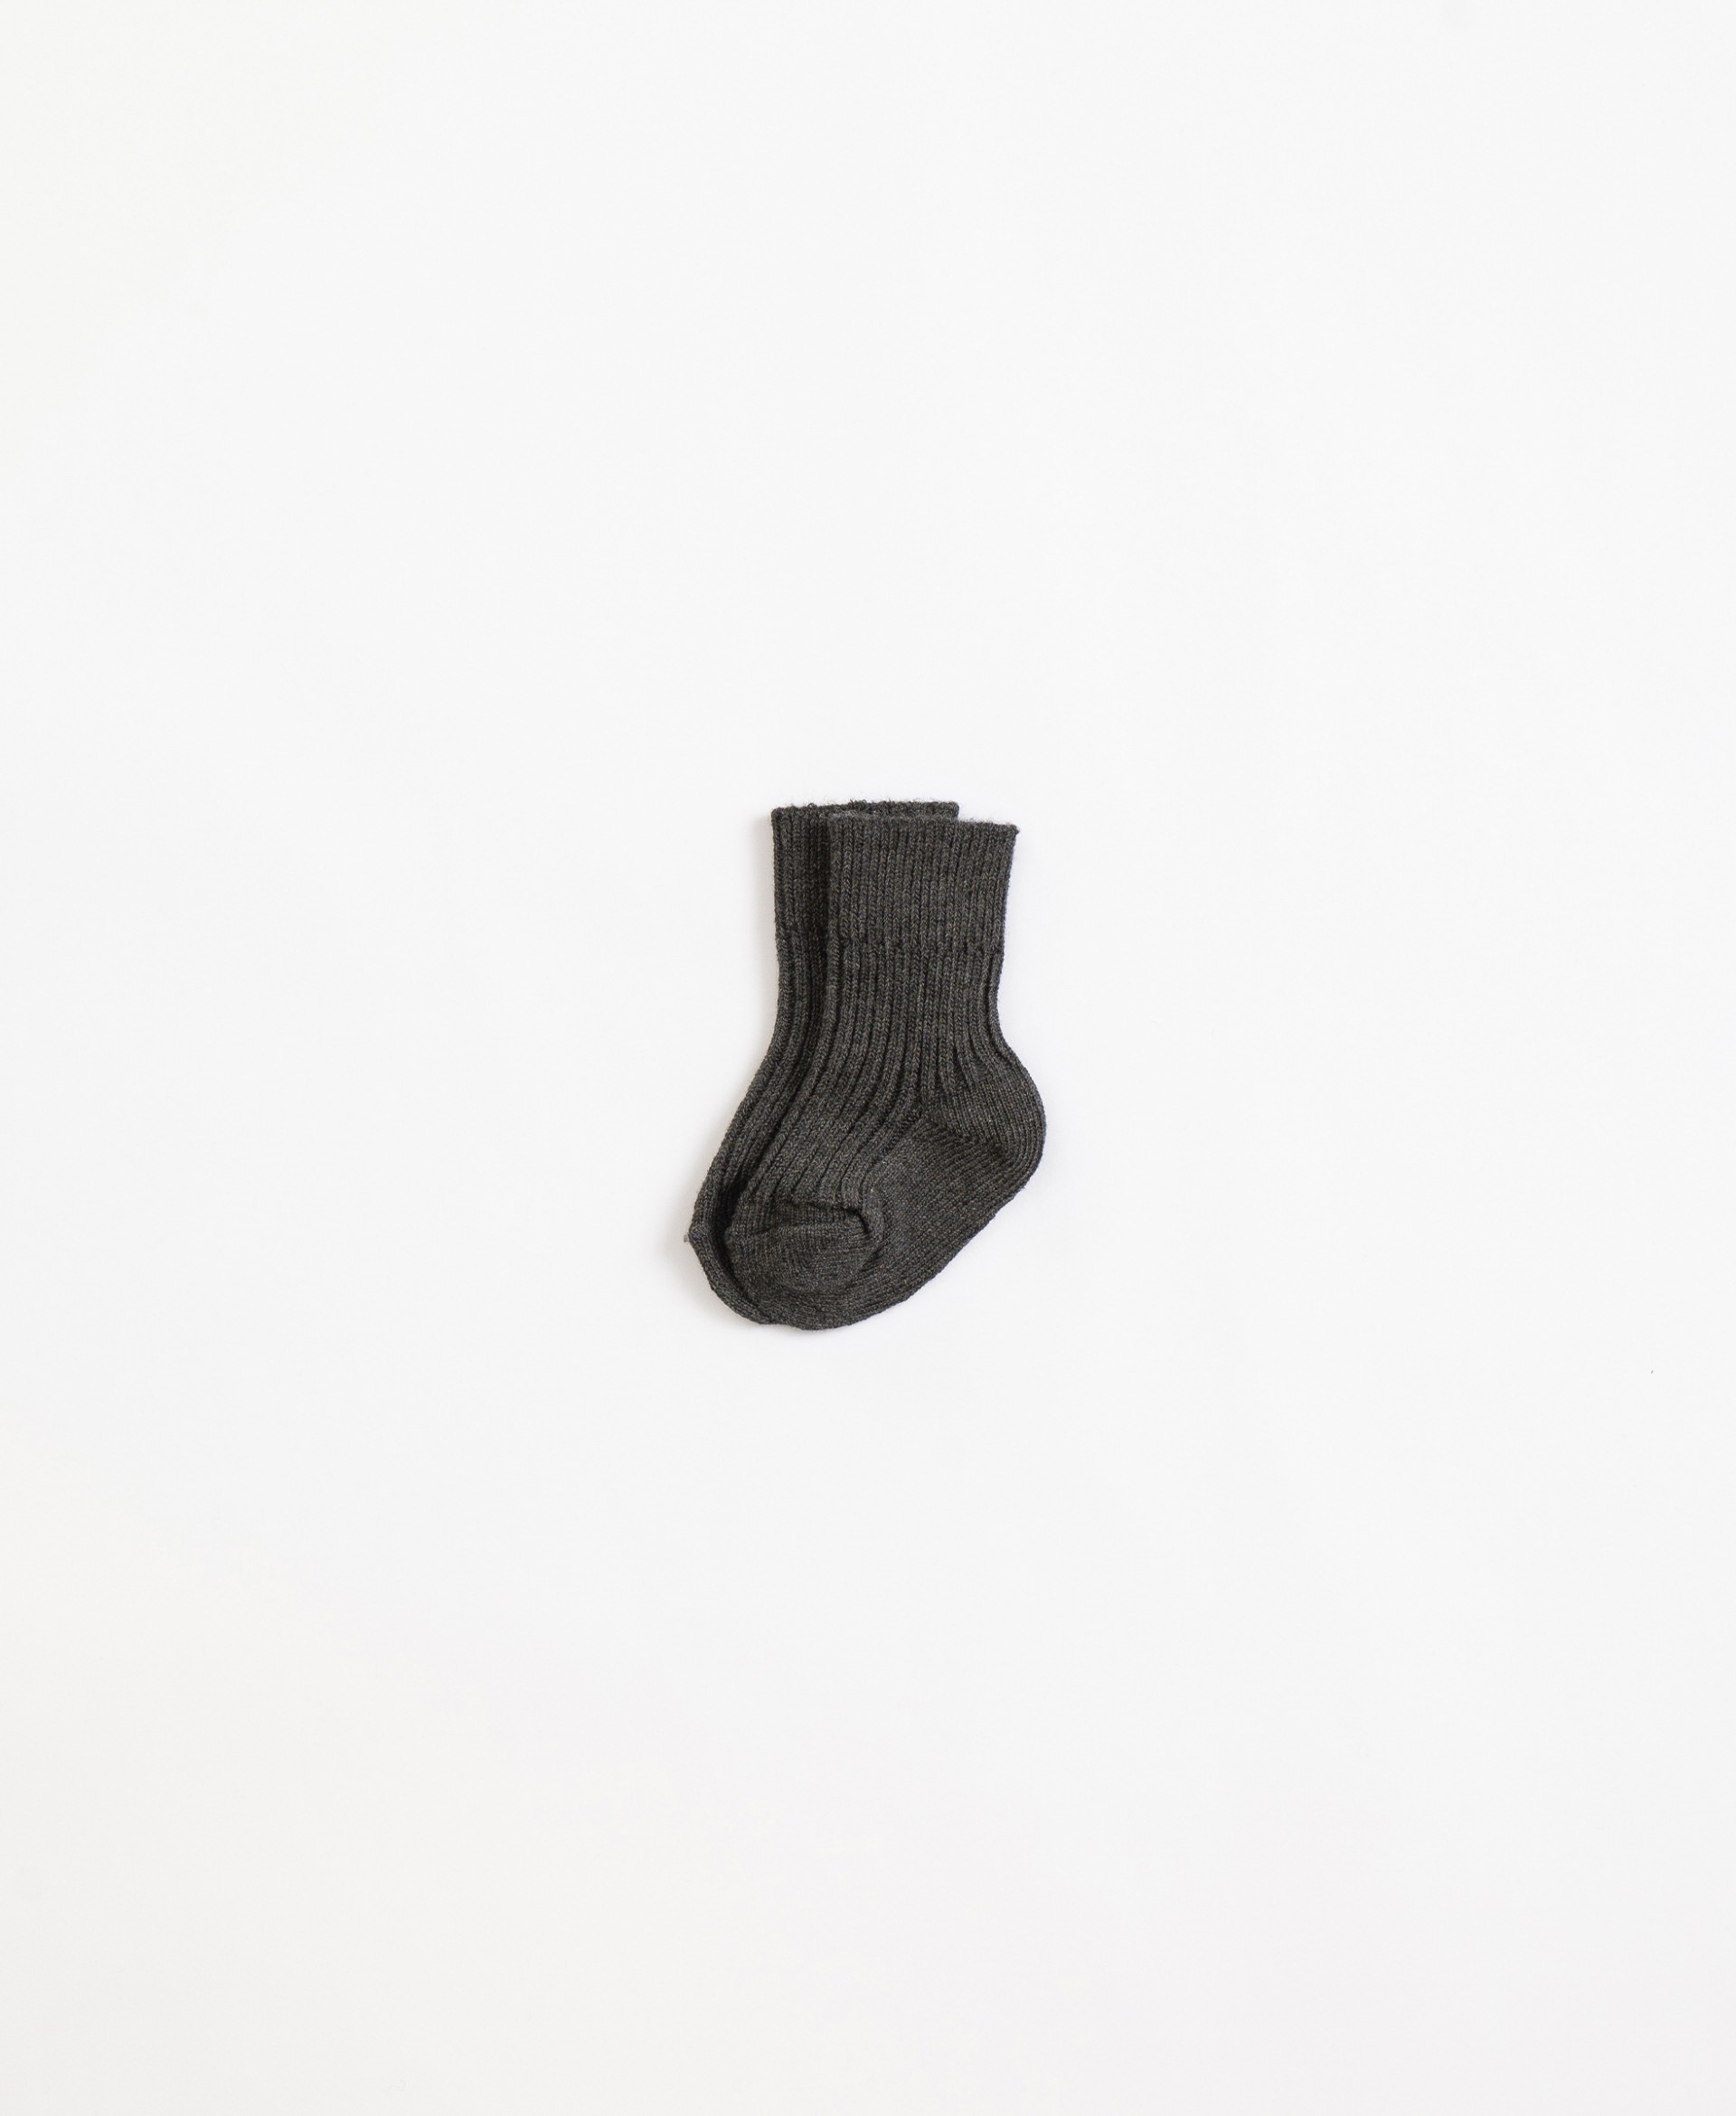 Ribbed socks| Illustration